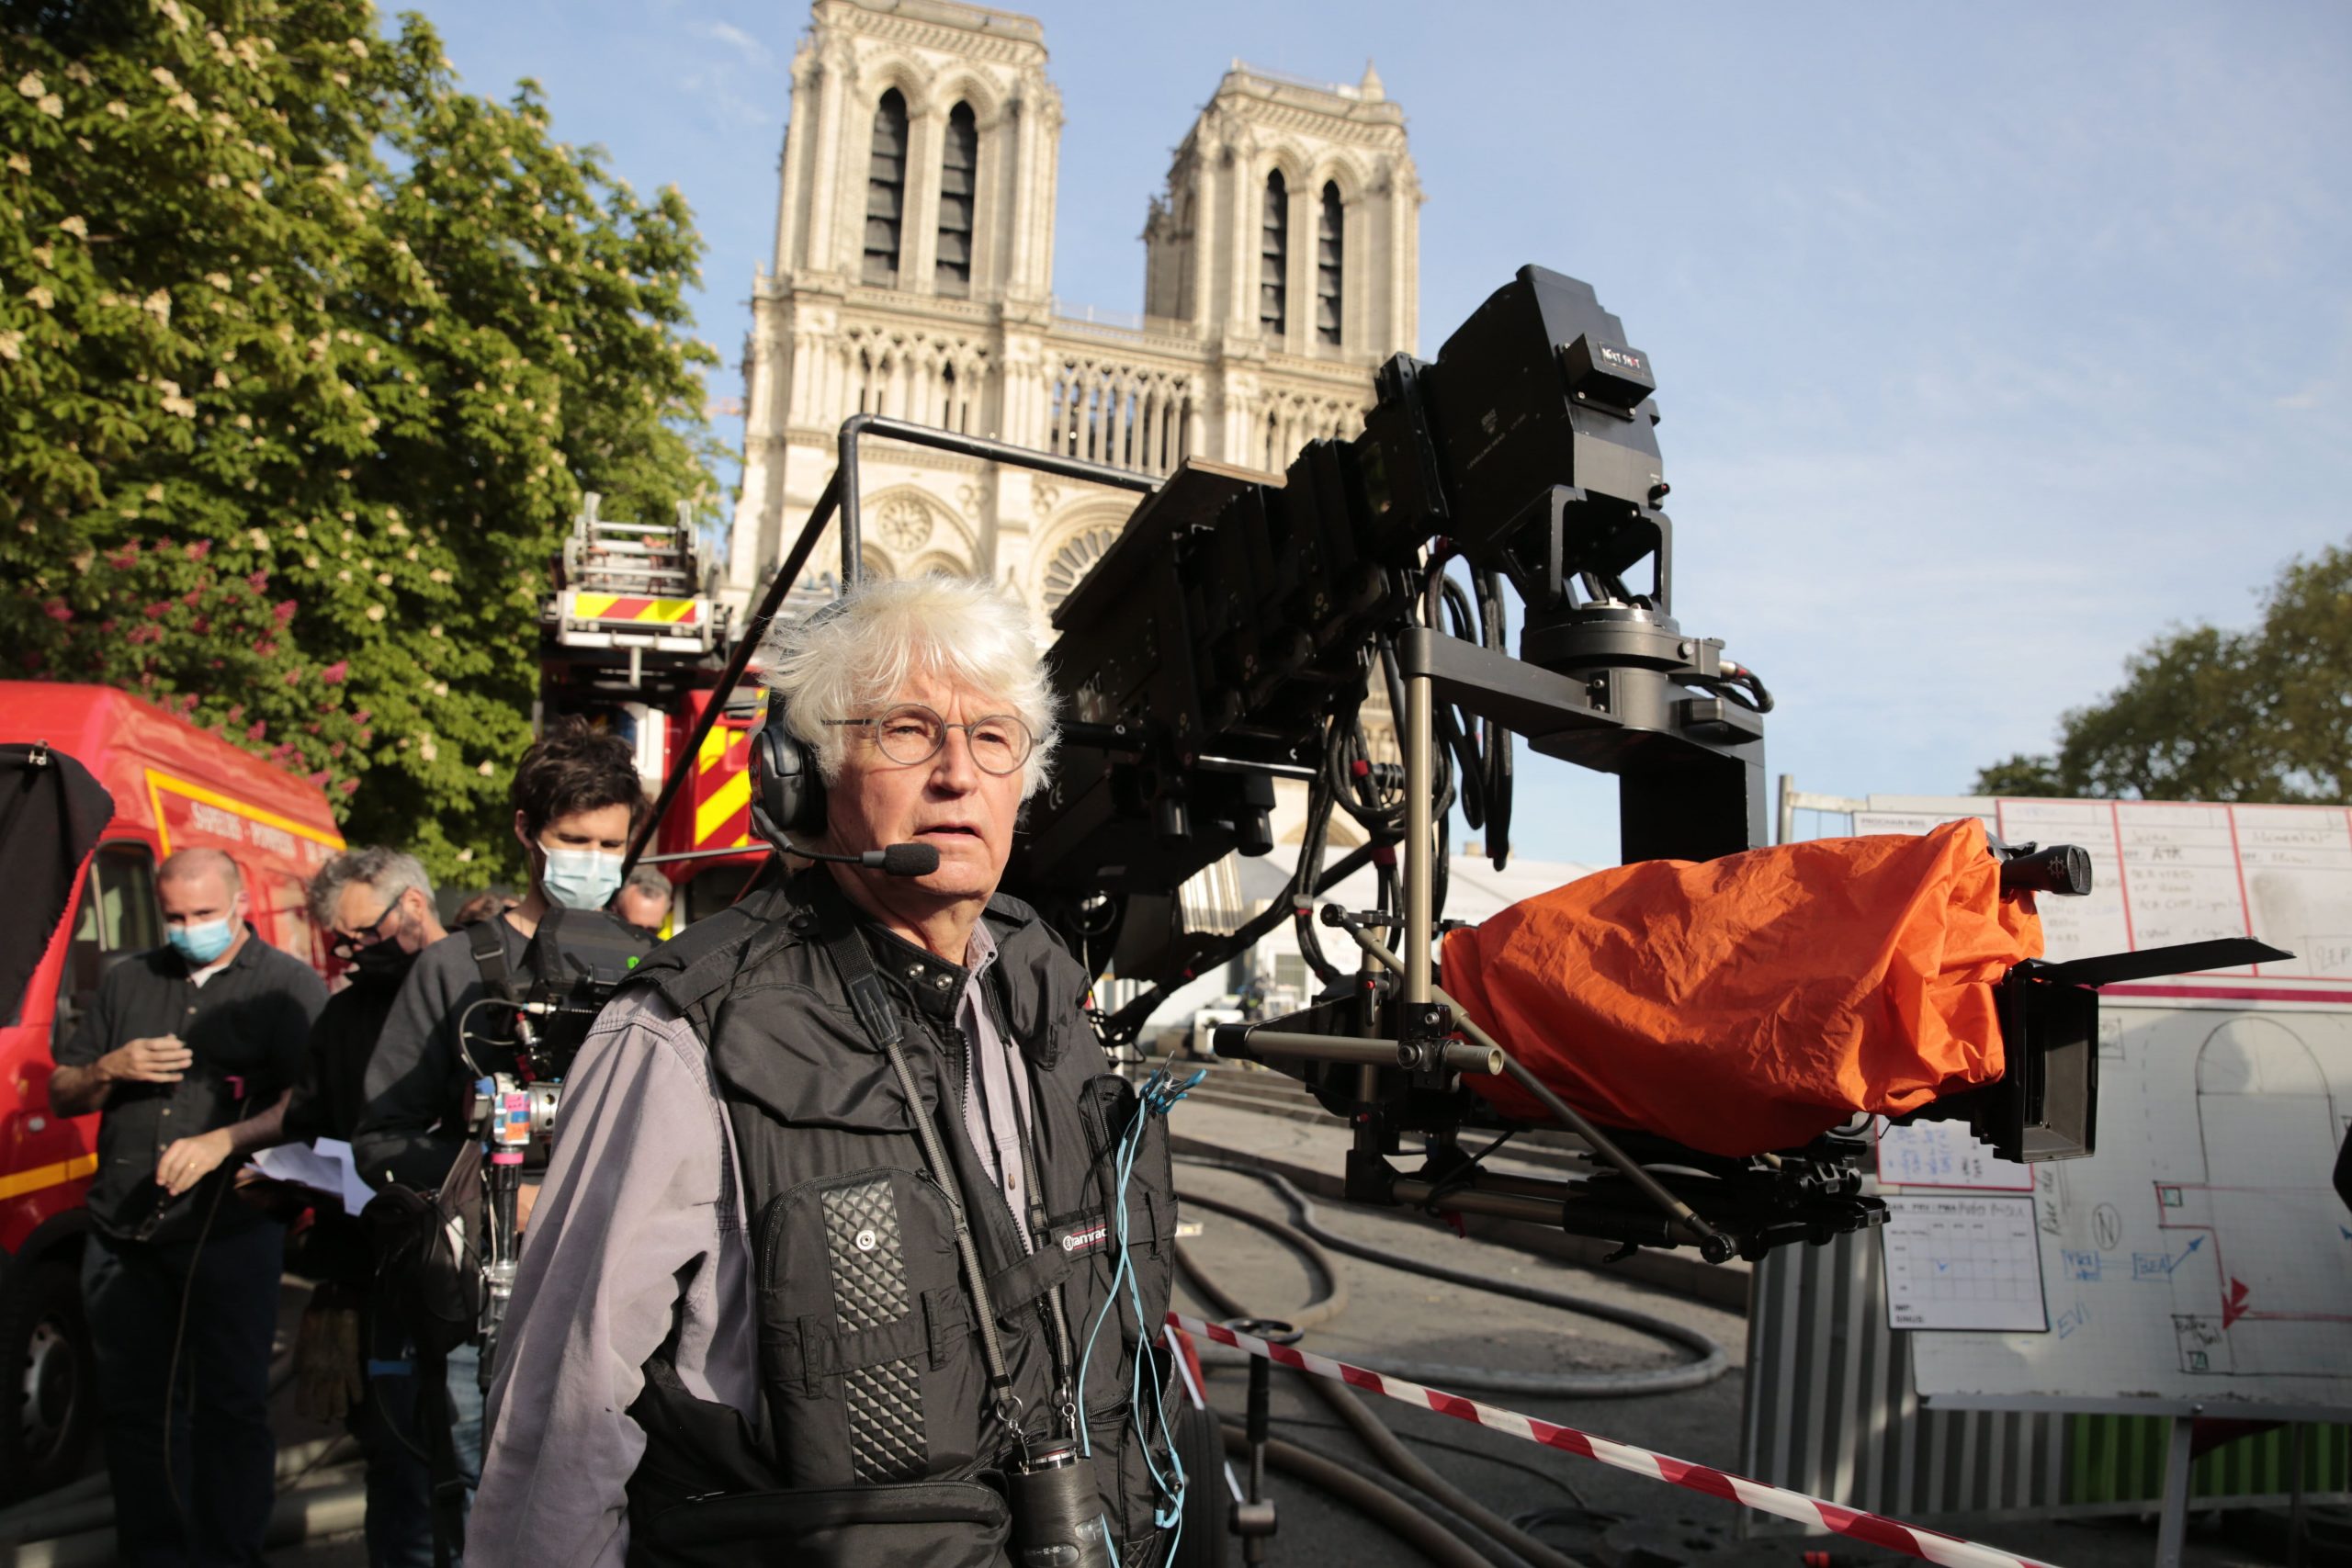 Le réalisateur Jean-Jacques Annaud sur le parvis lors du tournage de Notre-Dame brûle. Crédit : David Koskas